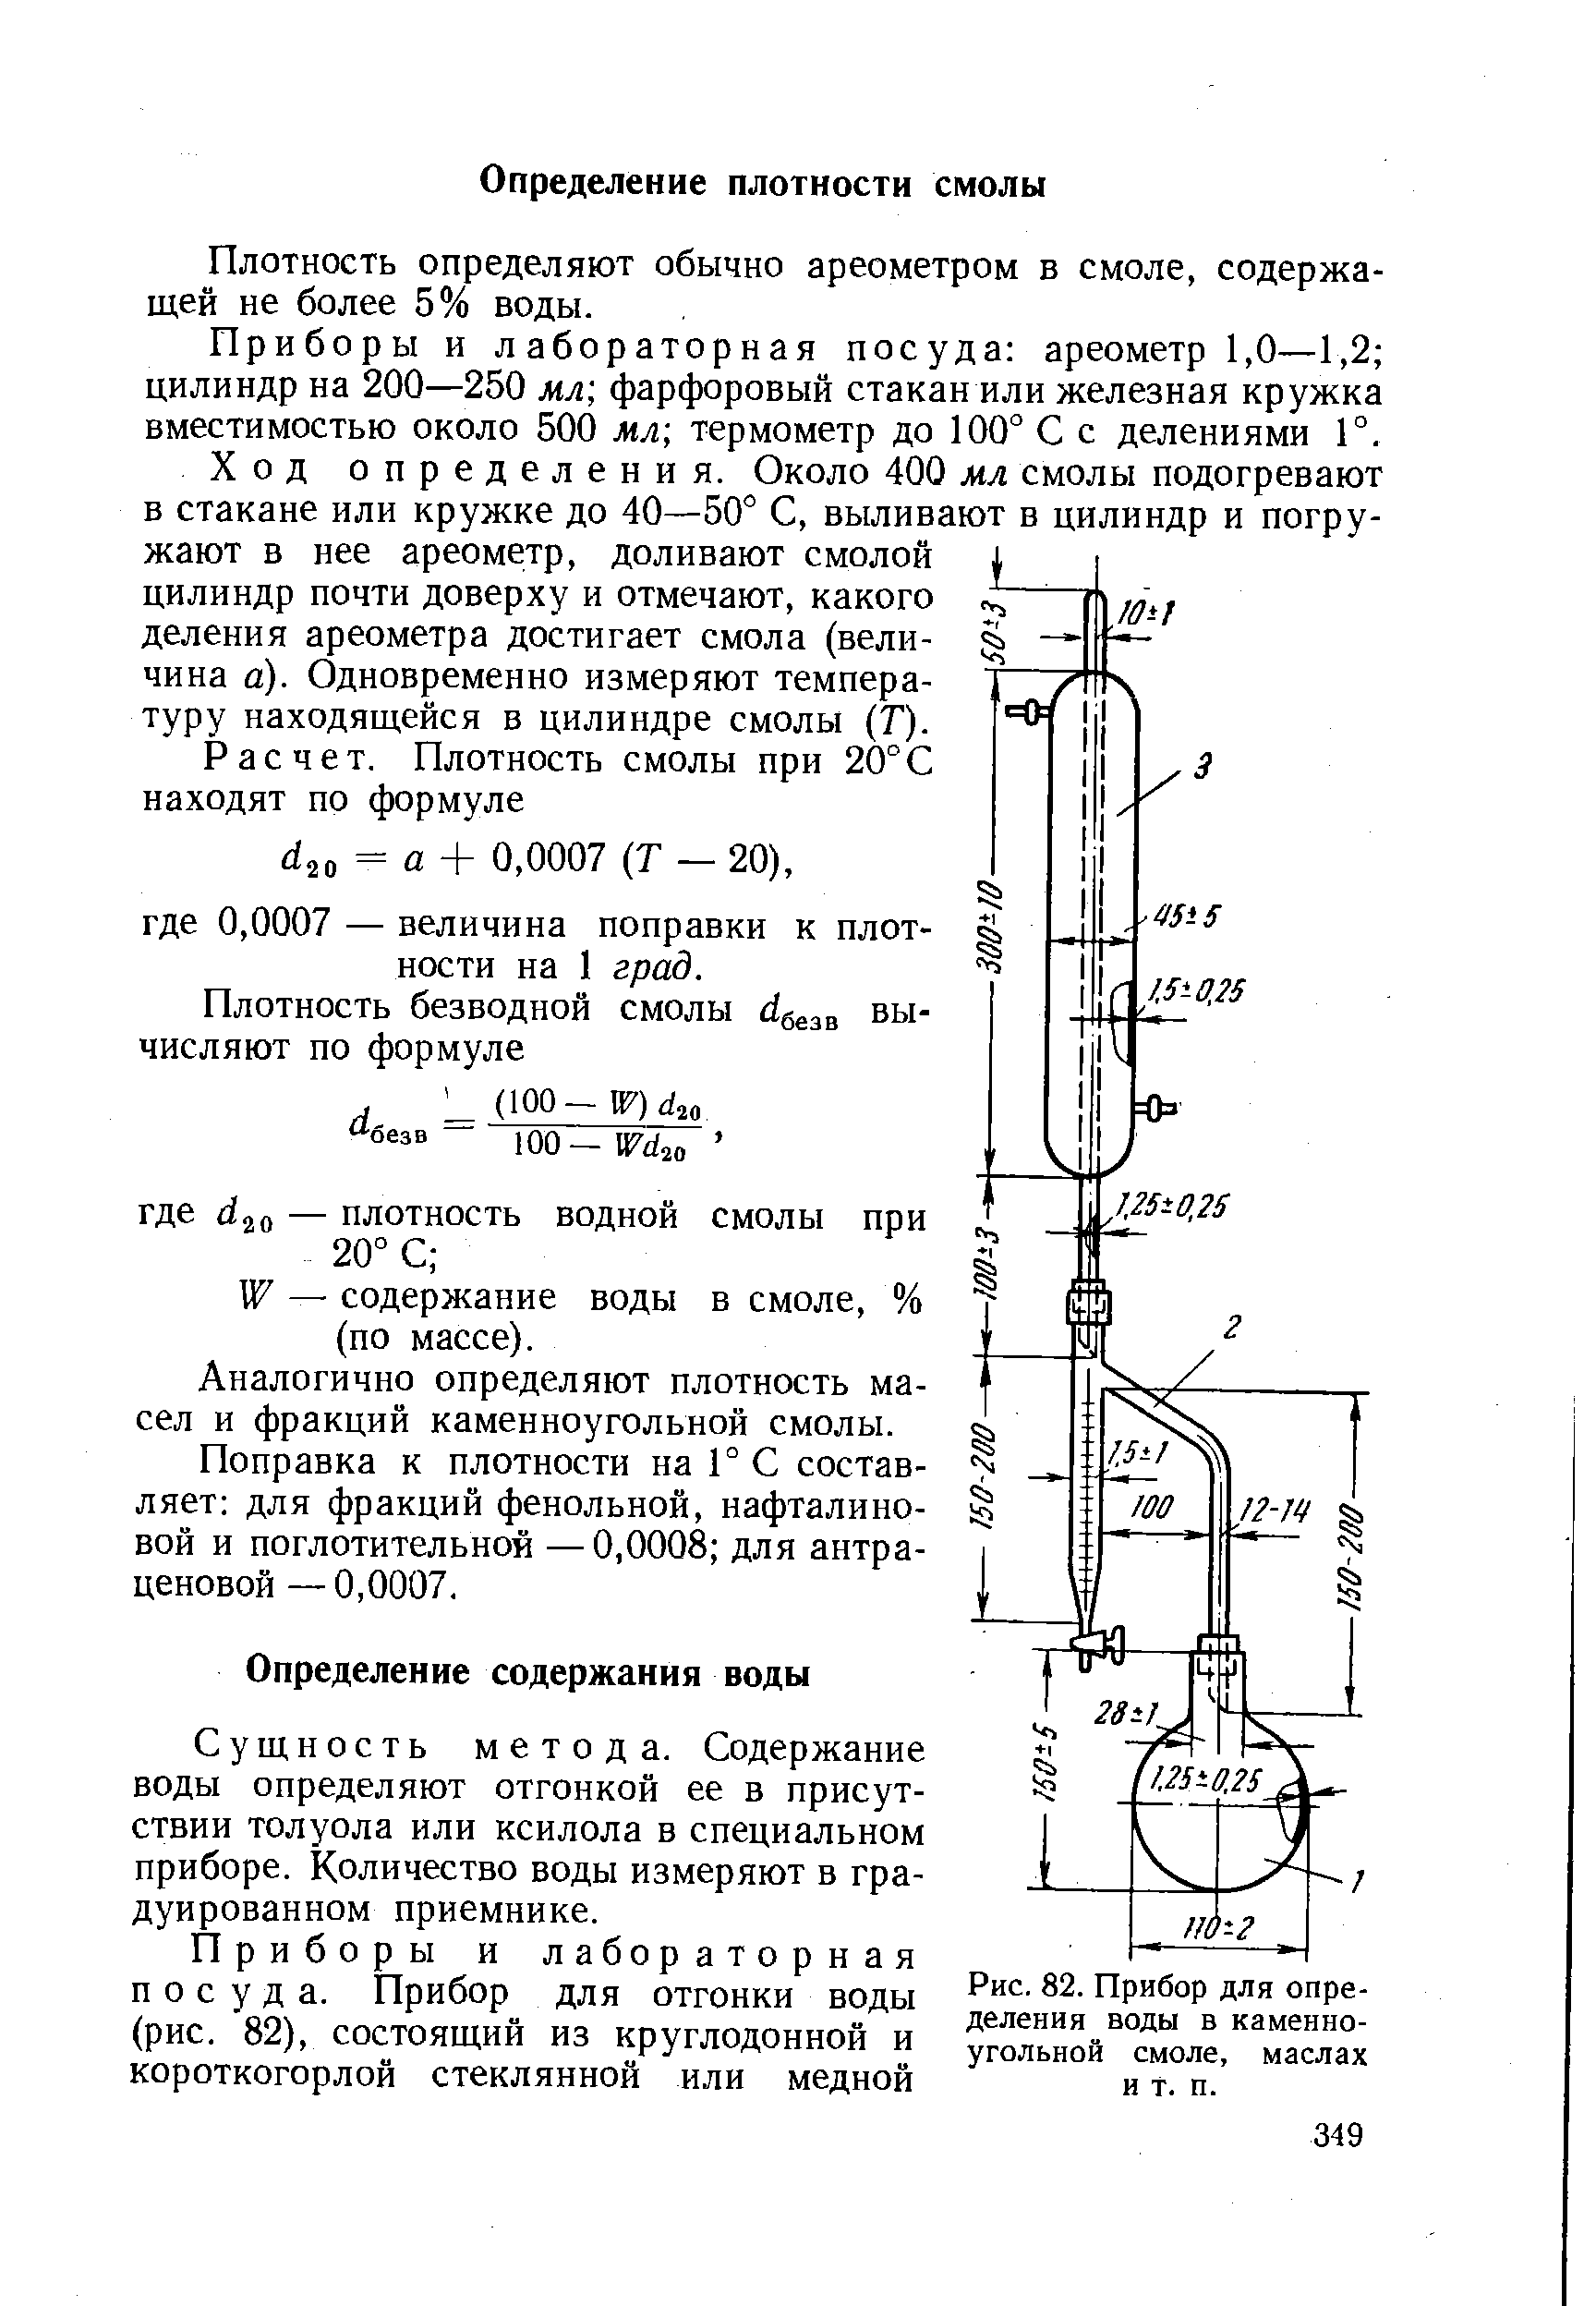 Измерение содержание воды. Аков-10-1 аппарат для определения содержания воды. Приемник-ЛОВУШКА К аппарату аков-25.